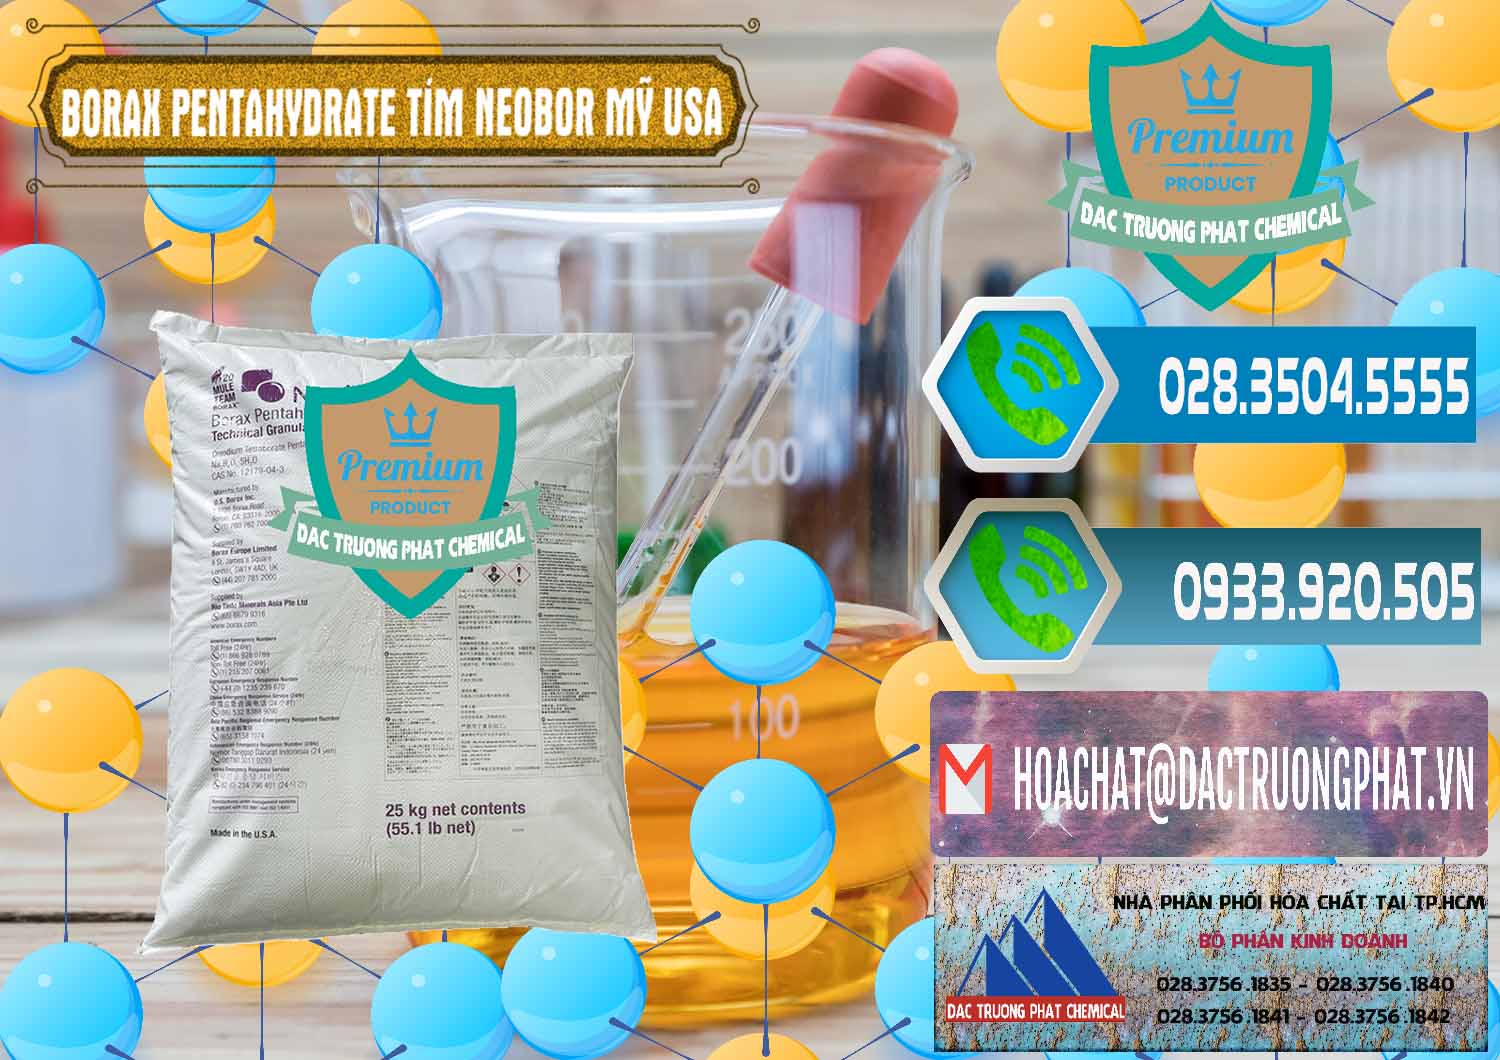 Đơn vị chuyên bán và cung ứng Borax Pentahydrate Bao Tím Neobor TG Mỹ Usa - 0277 - Chuyên cung cấp & phân phối hóa chất tại TP.HCM - congtyhoachat.net